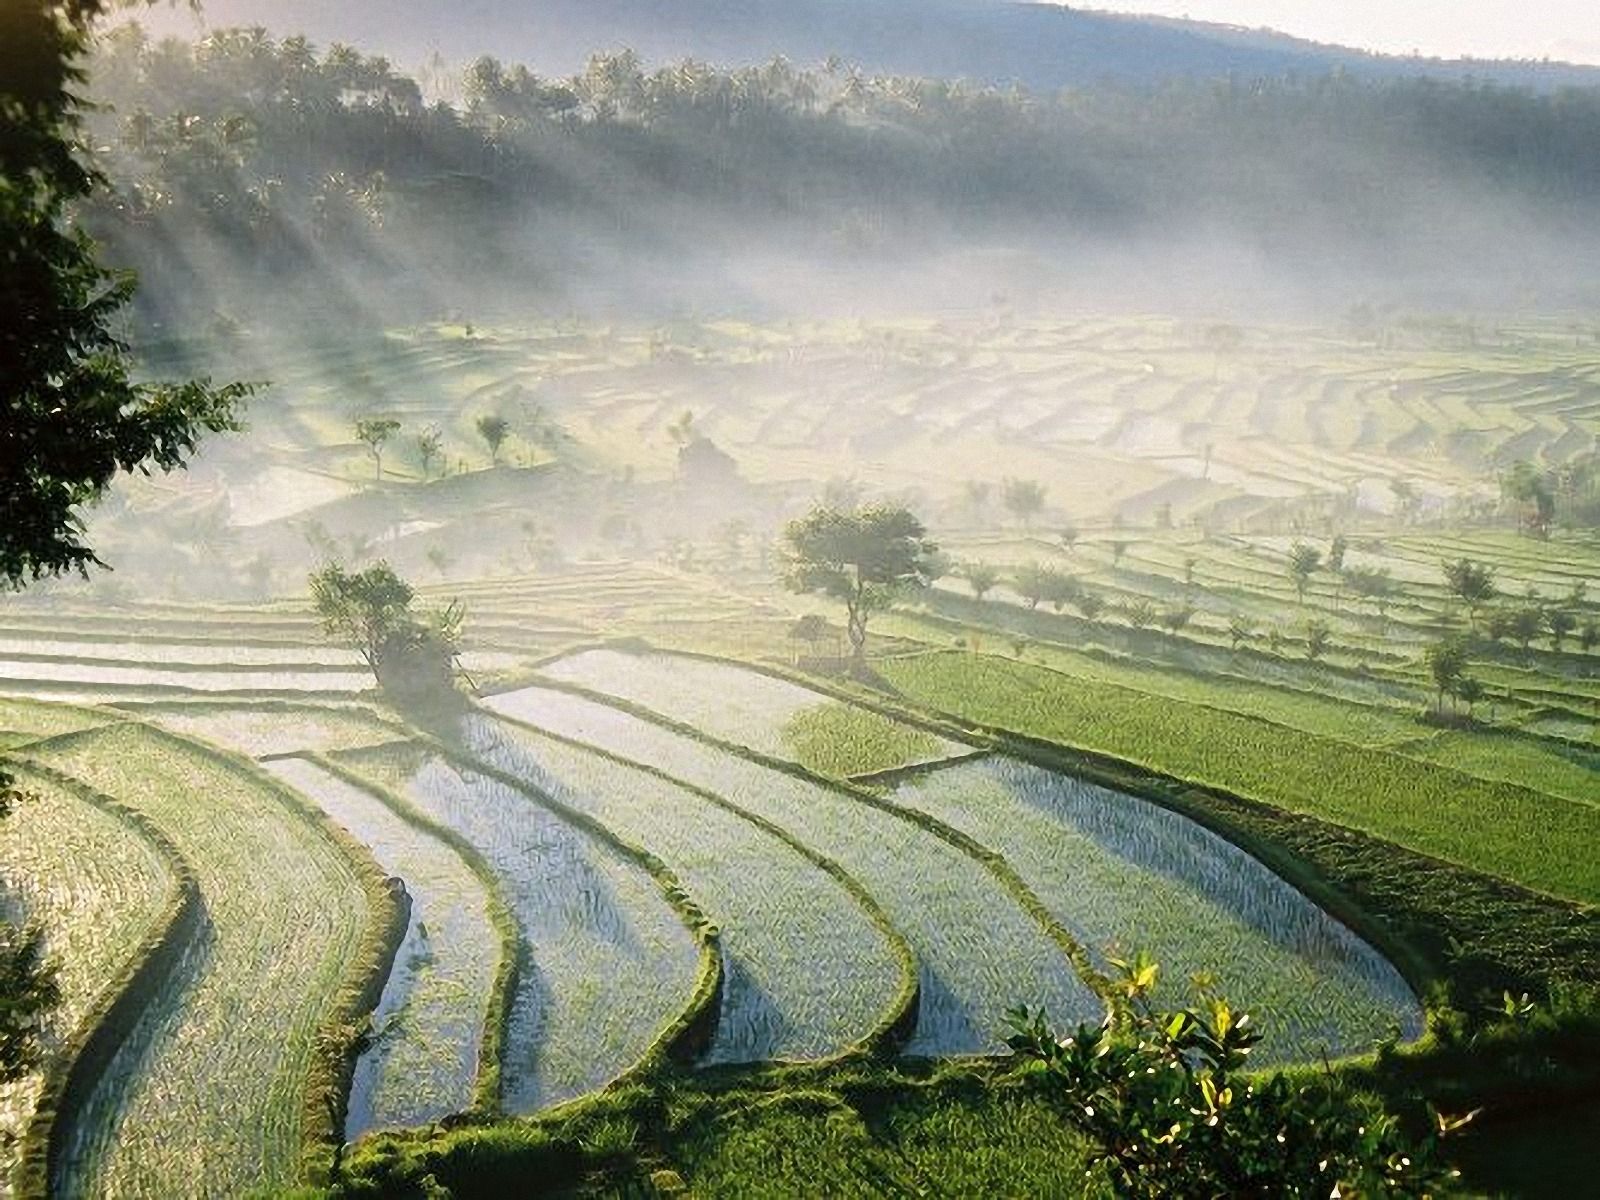 Bali Rice Fields wallpaper. Bali Rice Fields